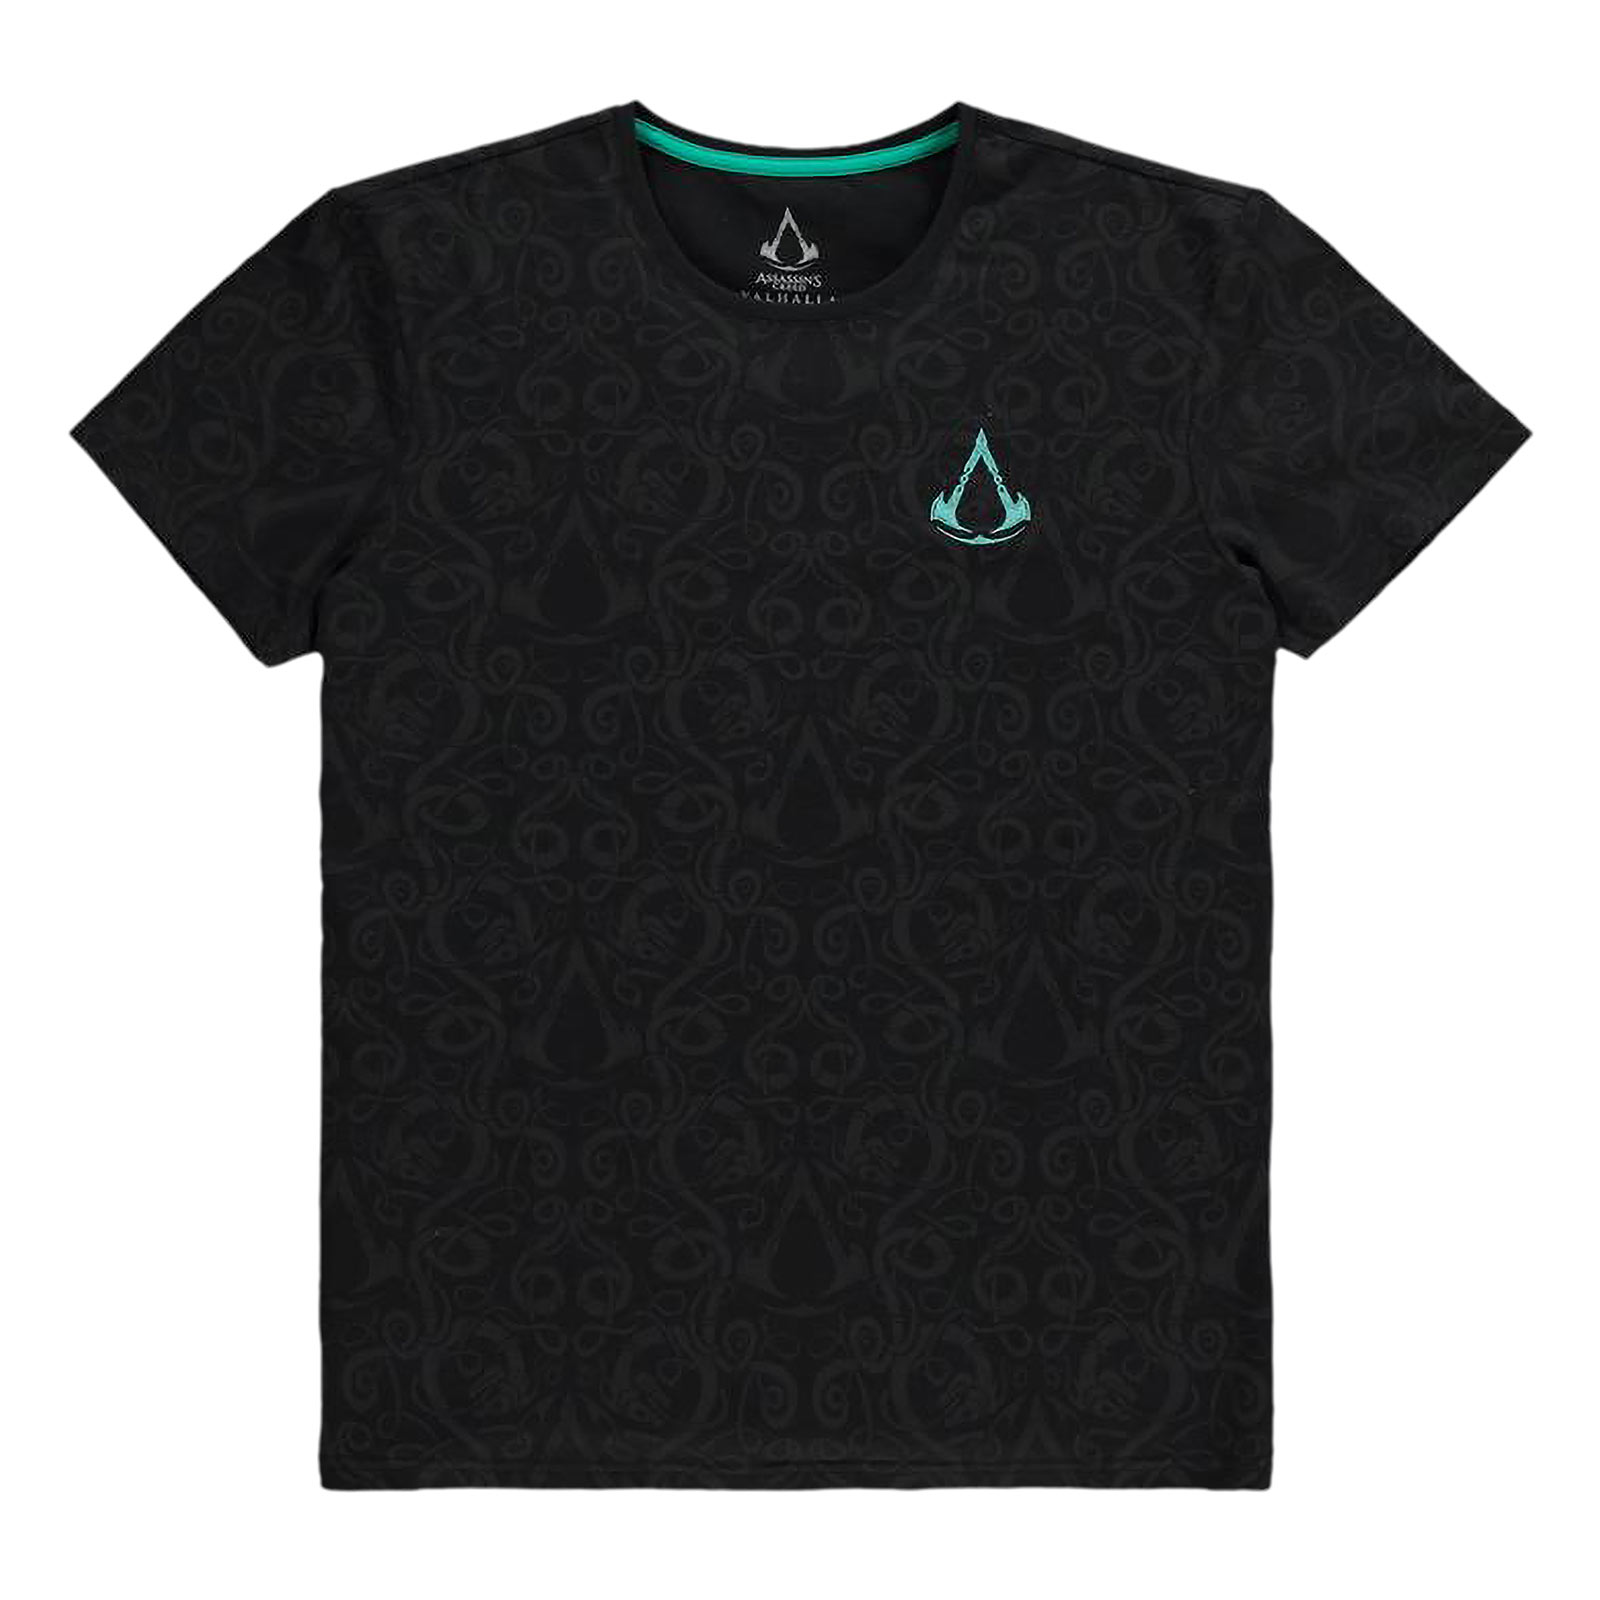 Assassin's Creed - Valhalla T-shirt nordique noir